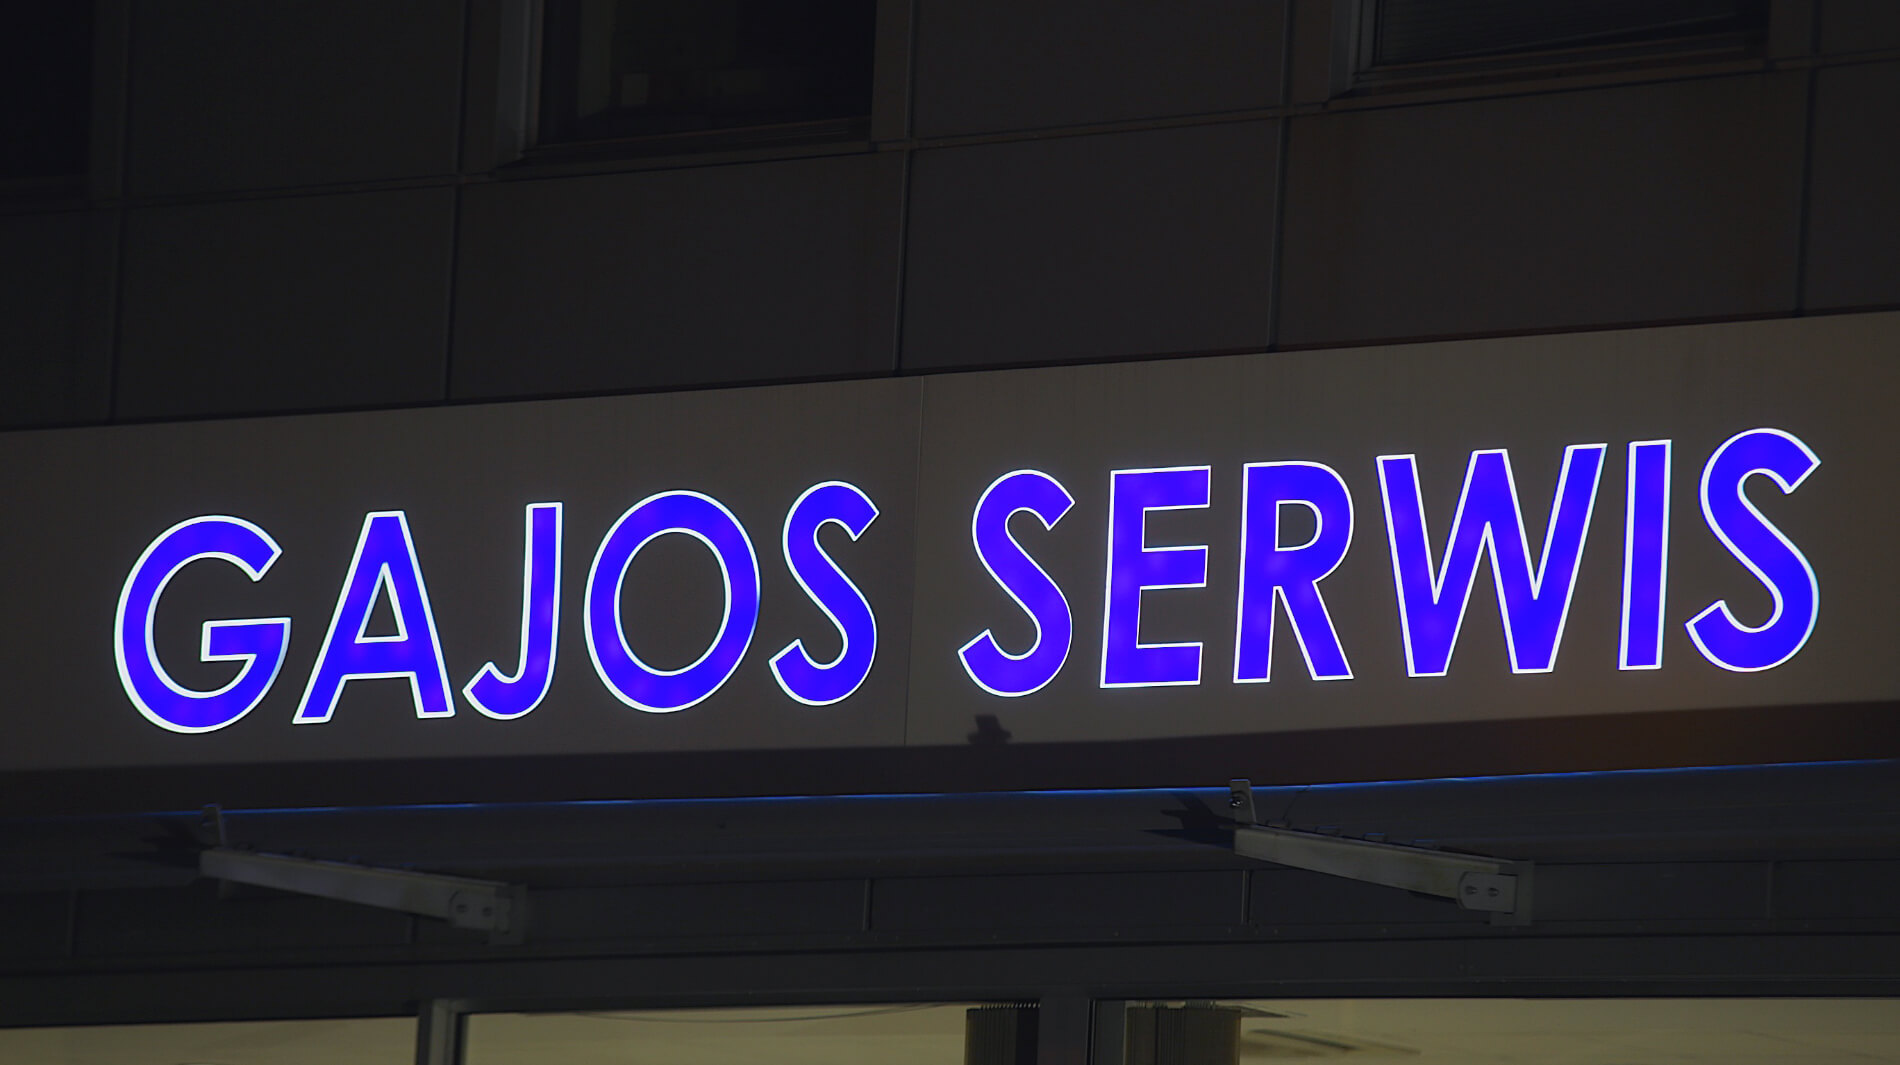 Gajos Dienst - Gajos Serwis - Leuchtkasten mit Firmenname, Buchstaben beleuchtet mit transluzenter Folie